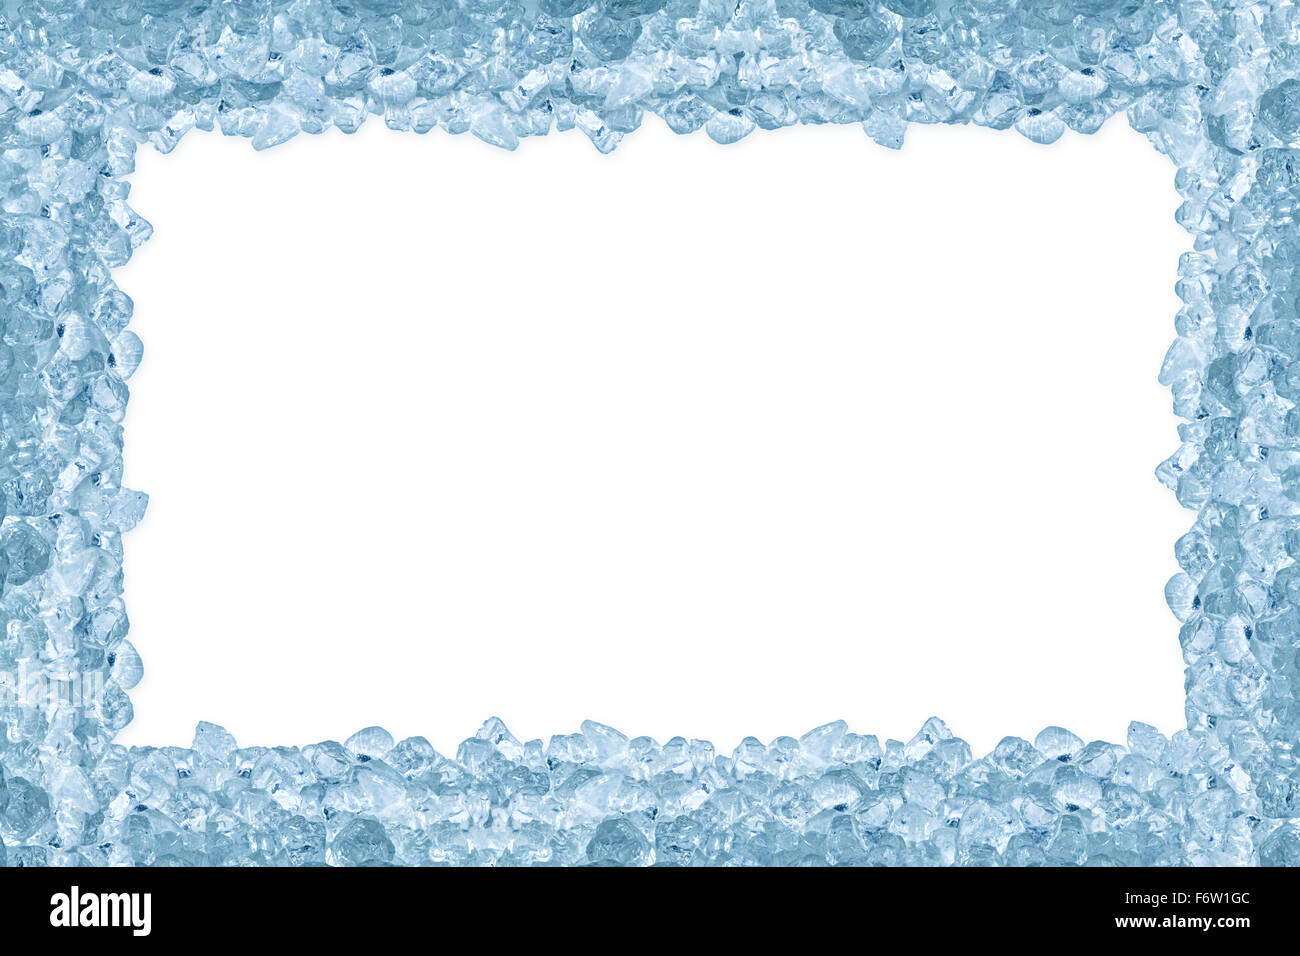 crushed ice on white background Stock Photo